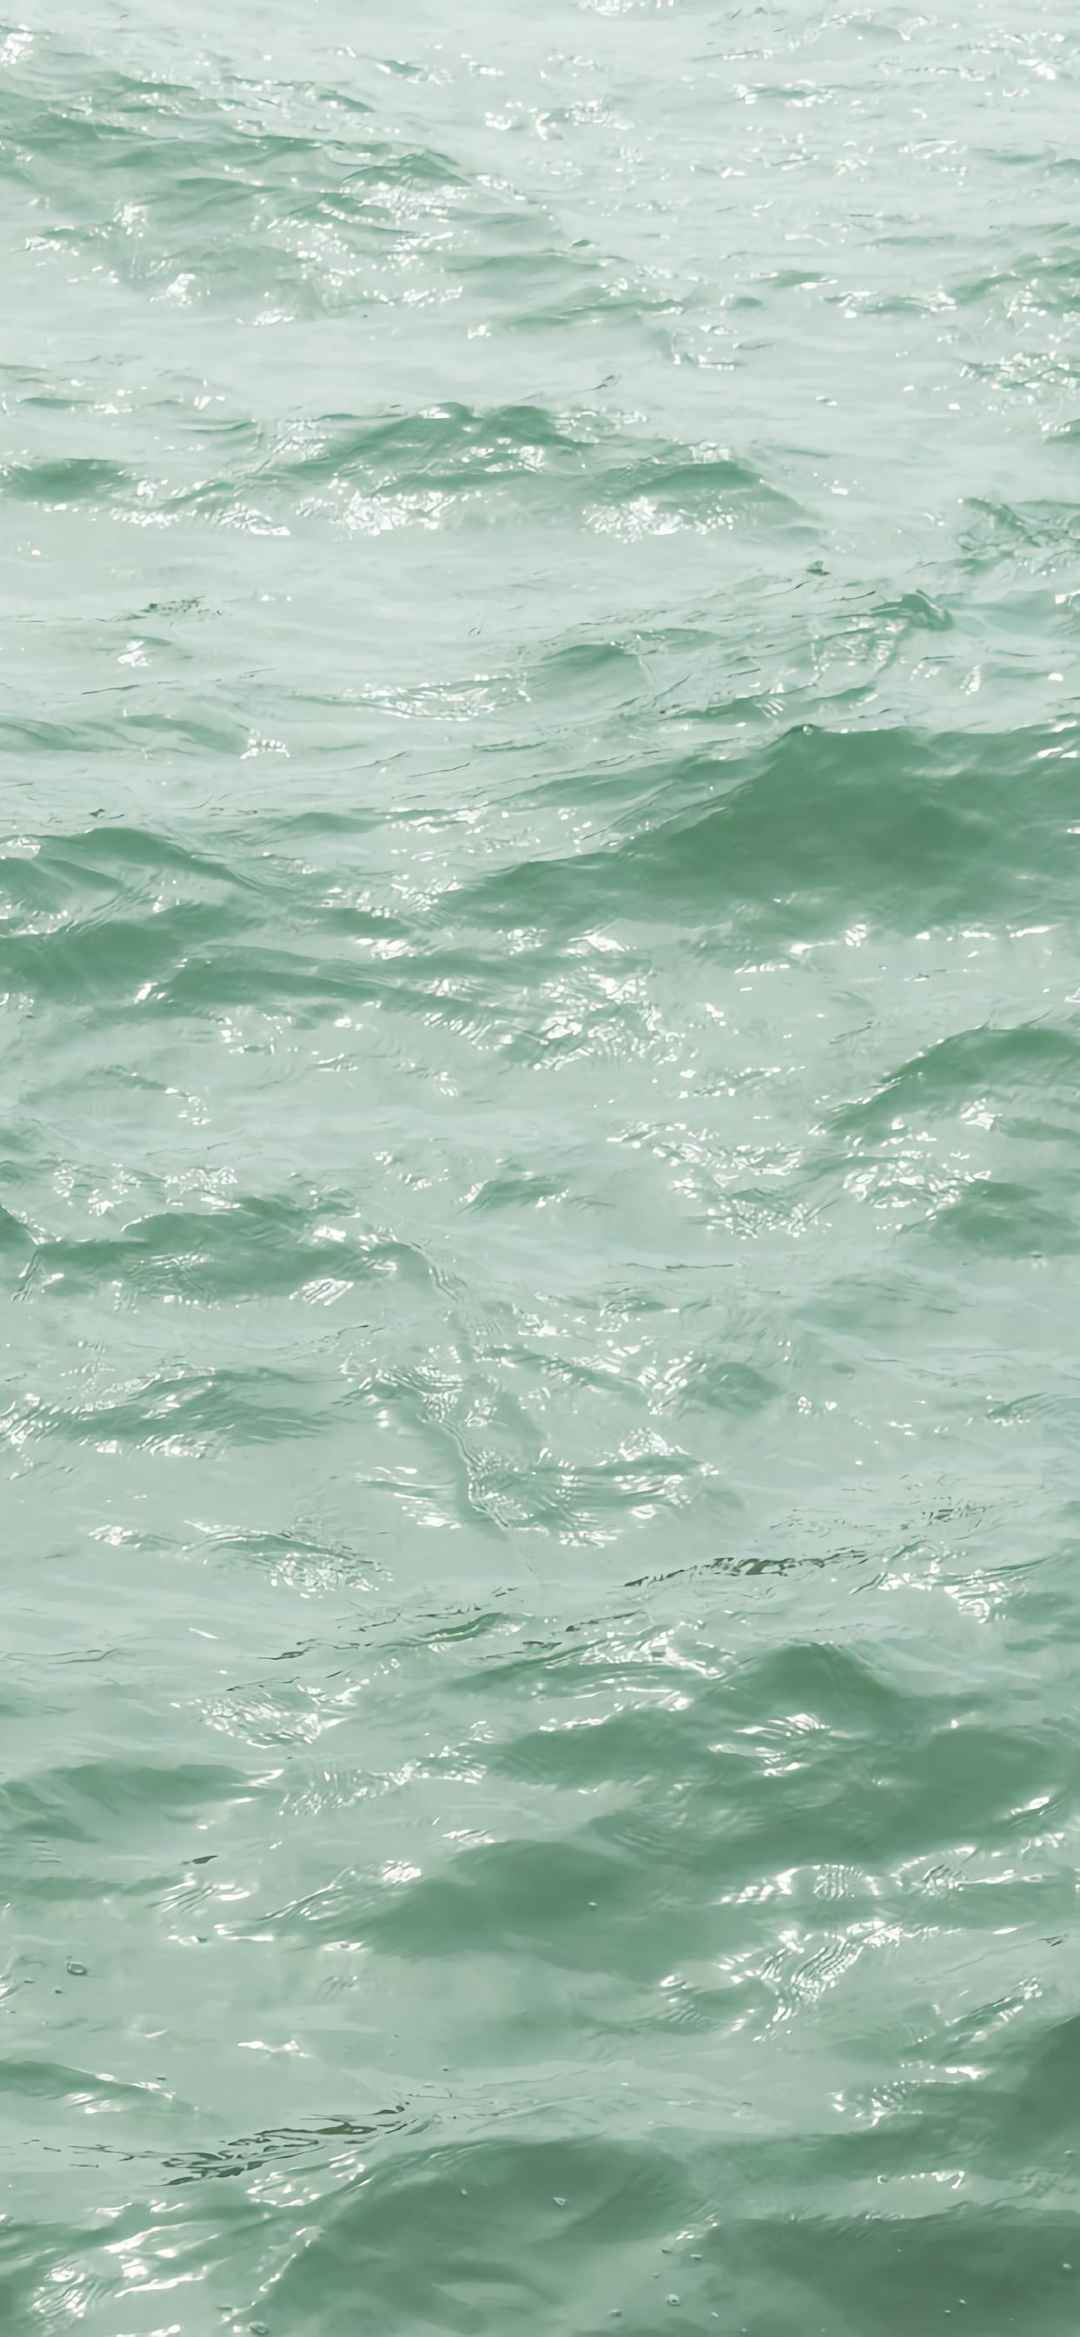 浅绿色大海风景图片手机壁纸-